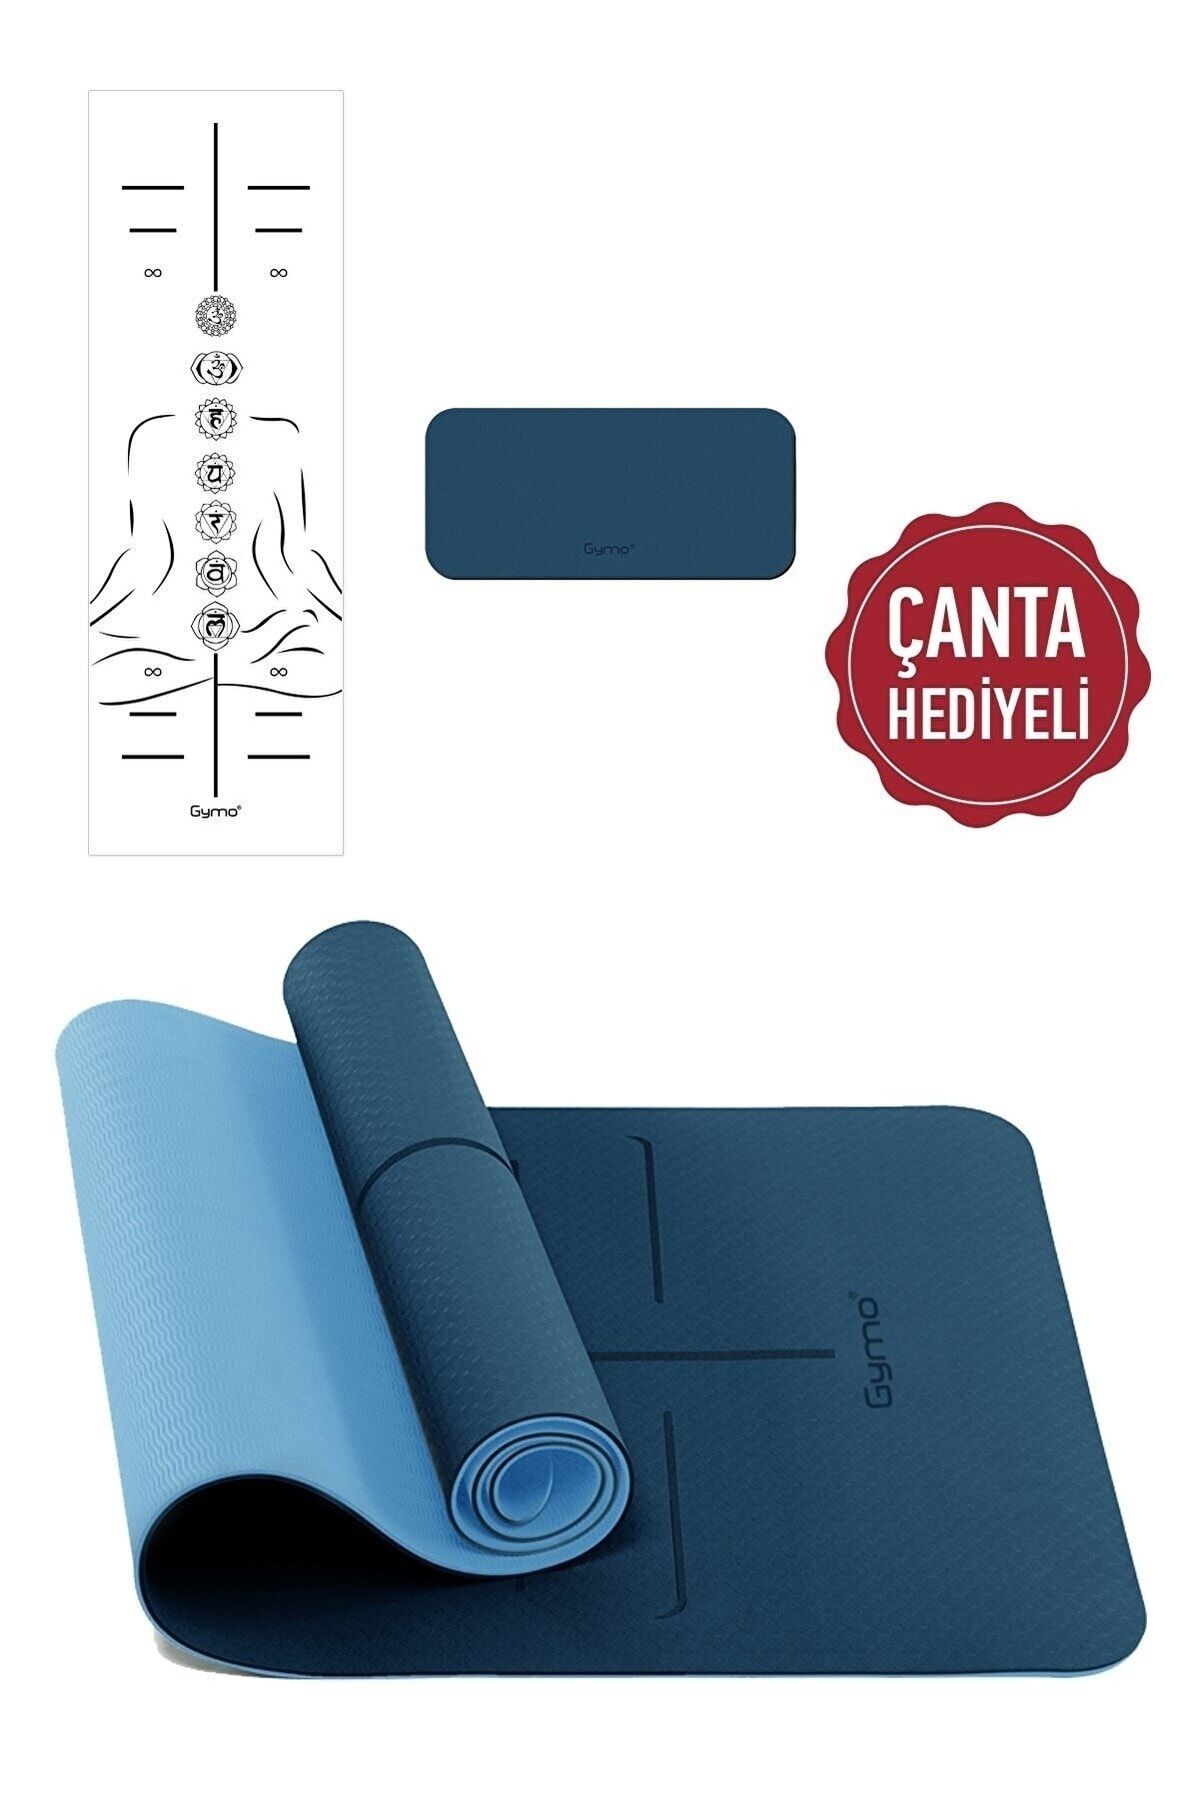 Gymo Hizalamalı Sembol 6mm Tpe Yoga Matı Pilates Minderi Diz Dirsek Ve Koruyucu Mat Taşıma Çantalı